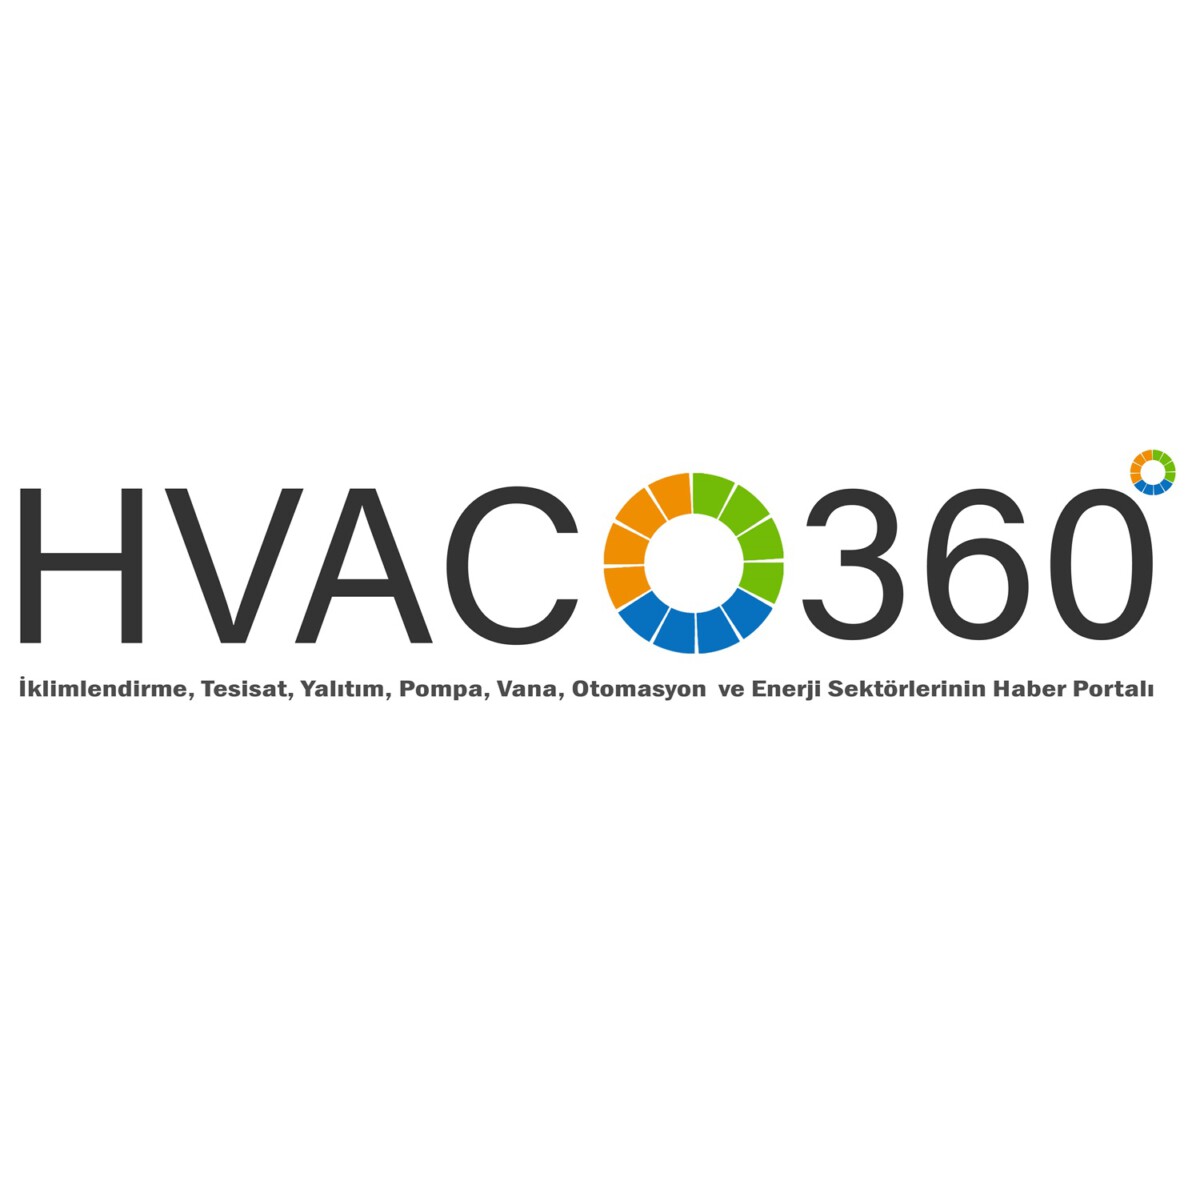 HVAC 360